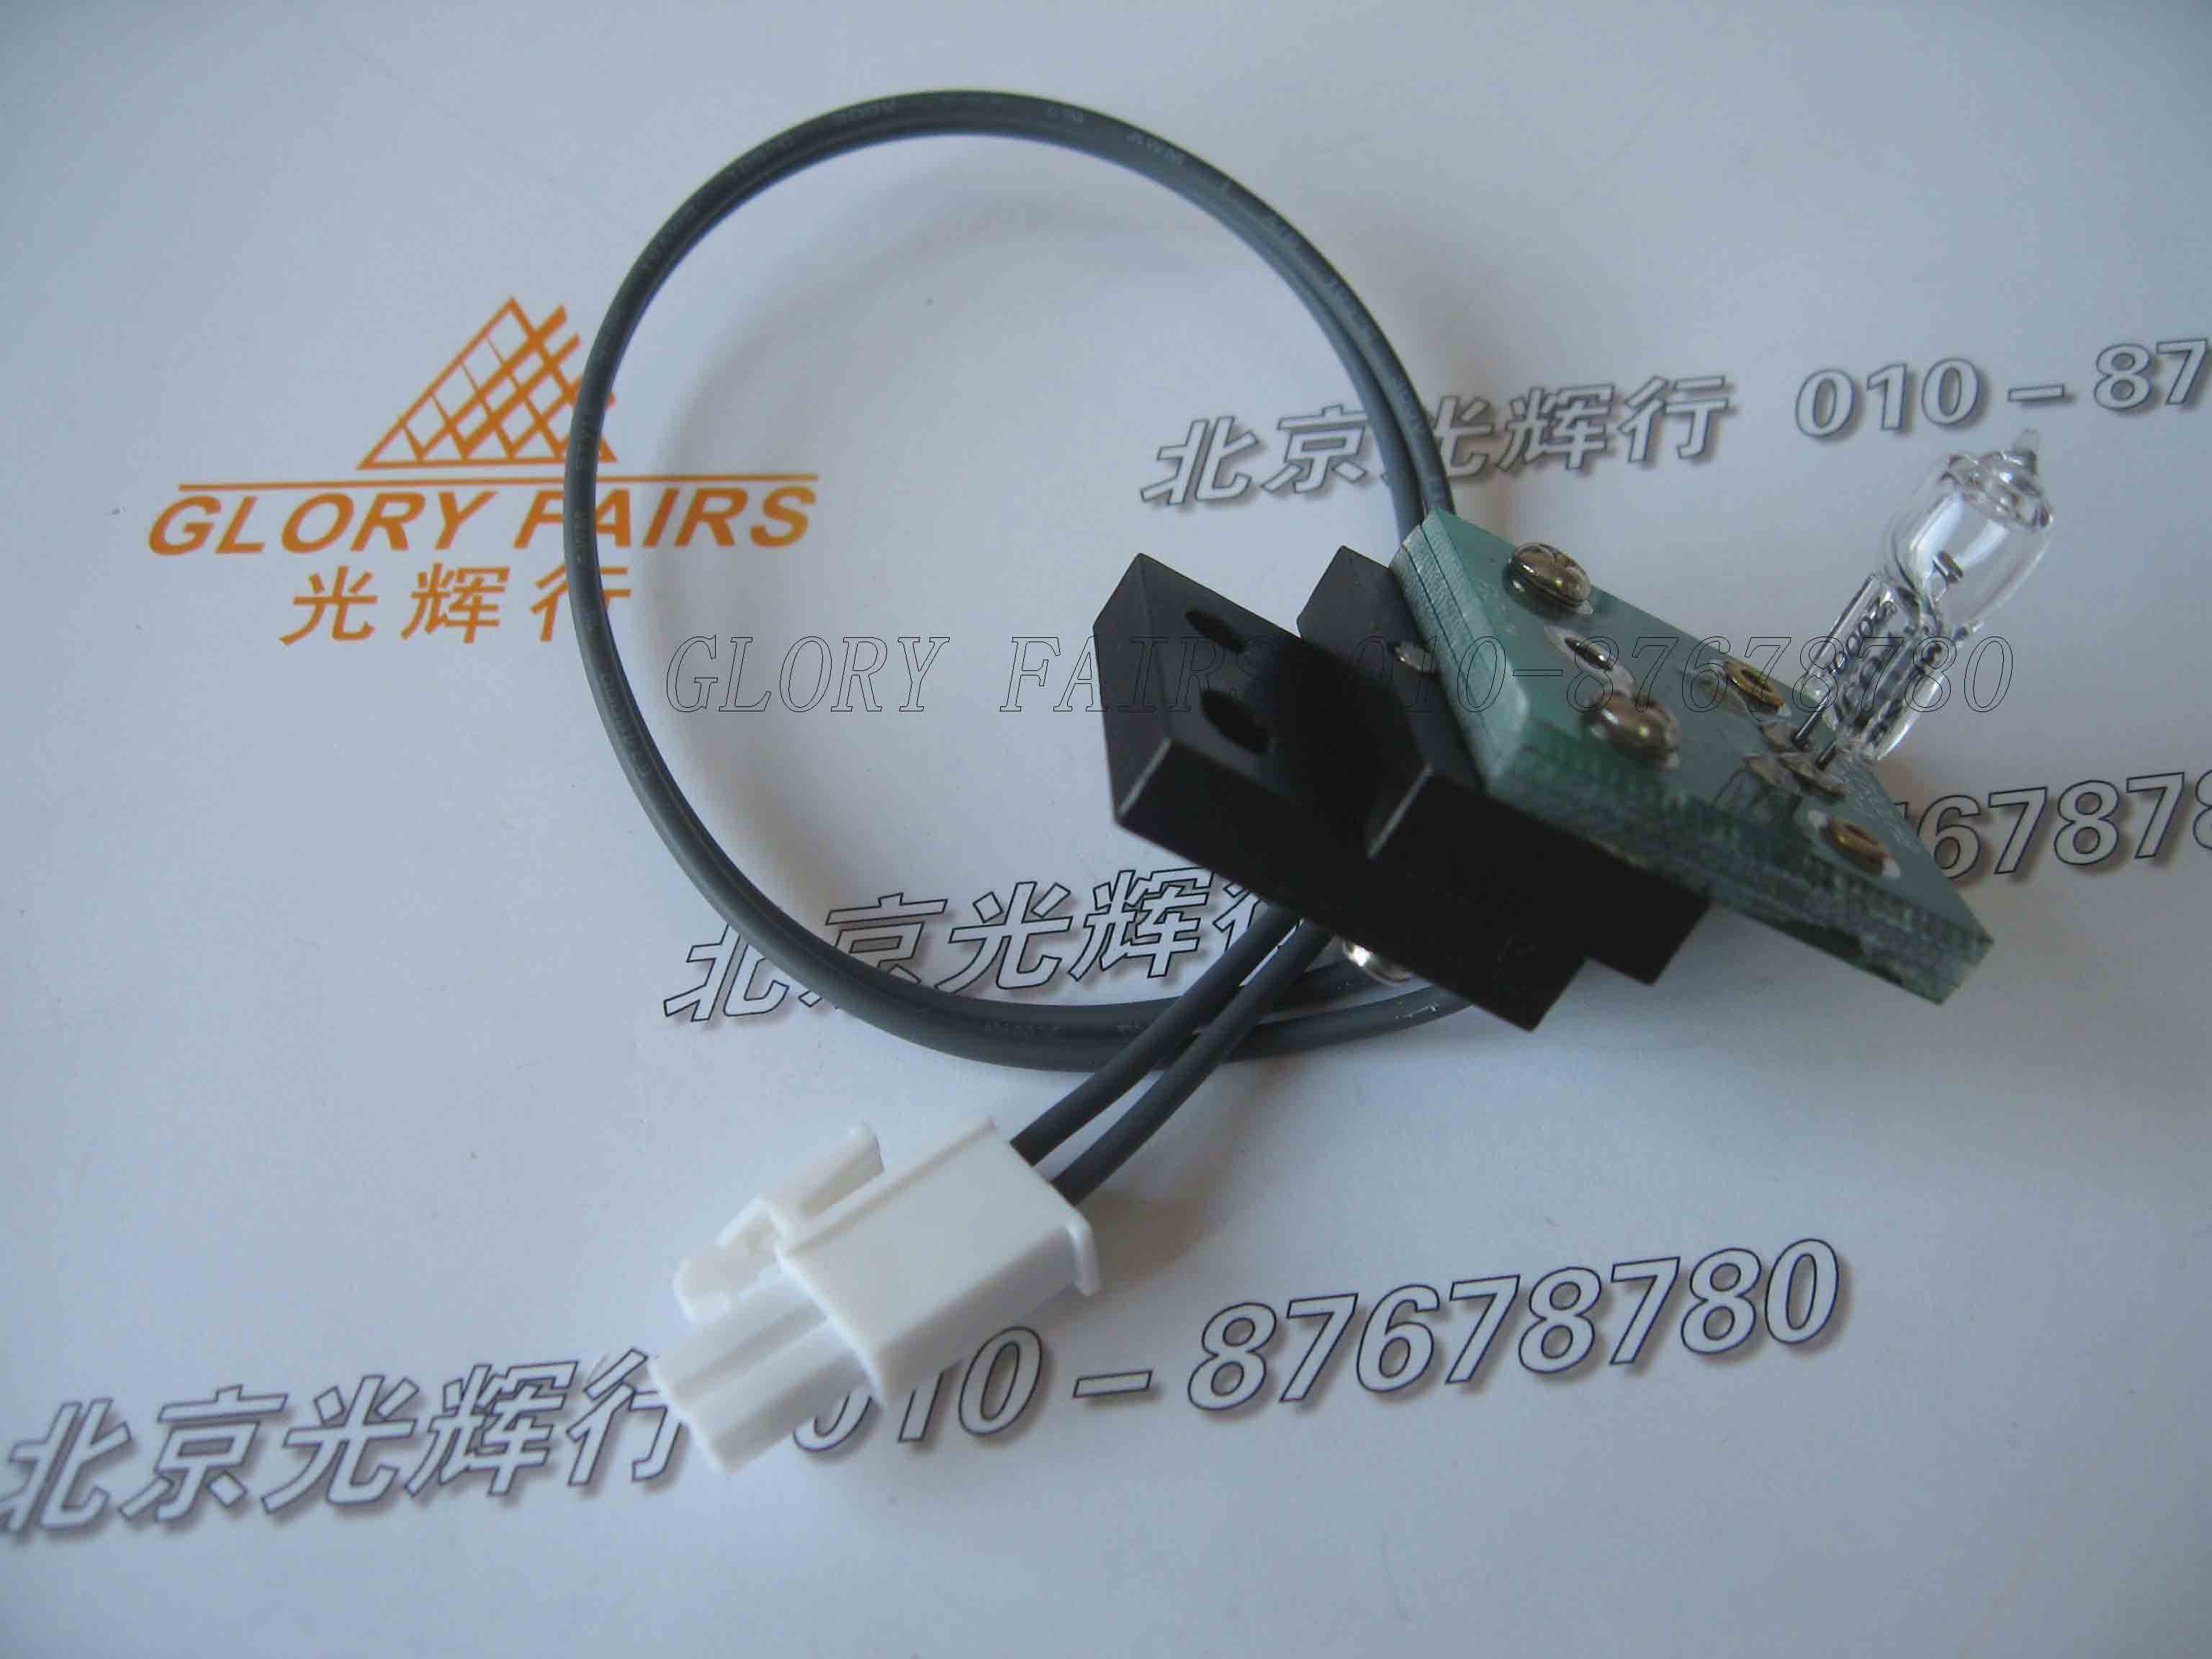 6V 20W 램프, 글래머 MD-1600 MD-1800 MD-2000 생화학 분석기, 6V20W 라이트 MD-1600/1800/2000 전구